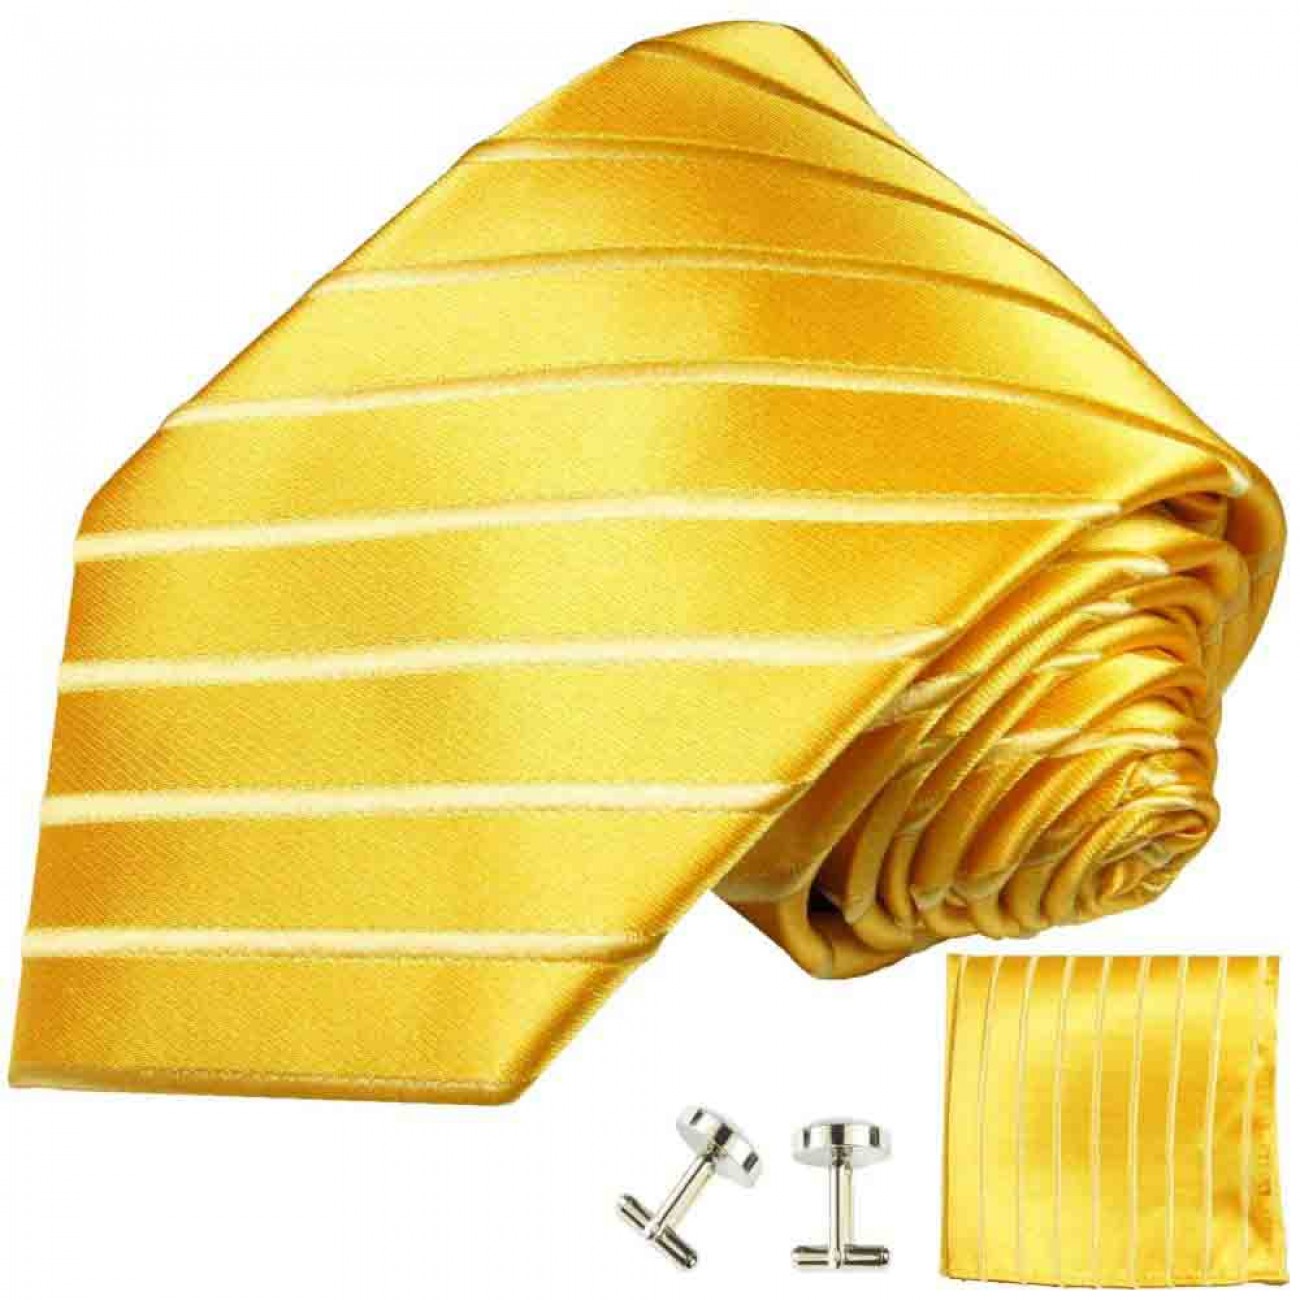 Krawatte gelb gold gestreift Seidenkrawatte - Seide - Krawatte mit Einstecktuch und Manschettenknöpfe